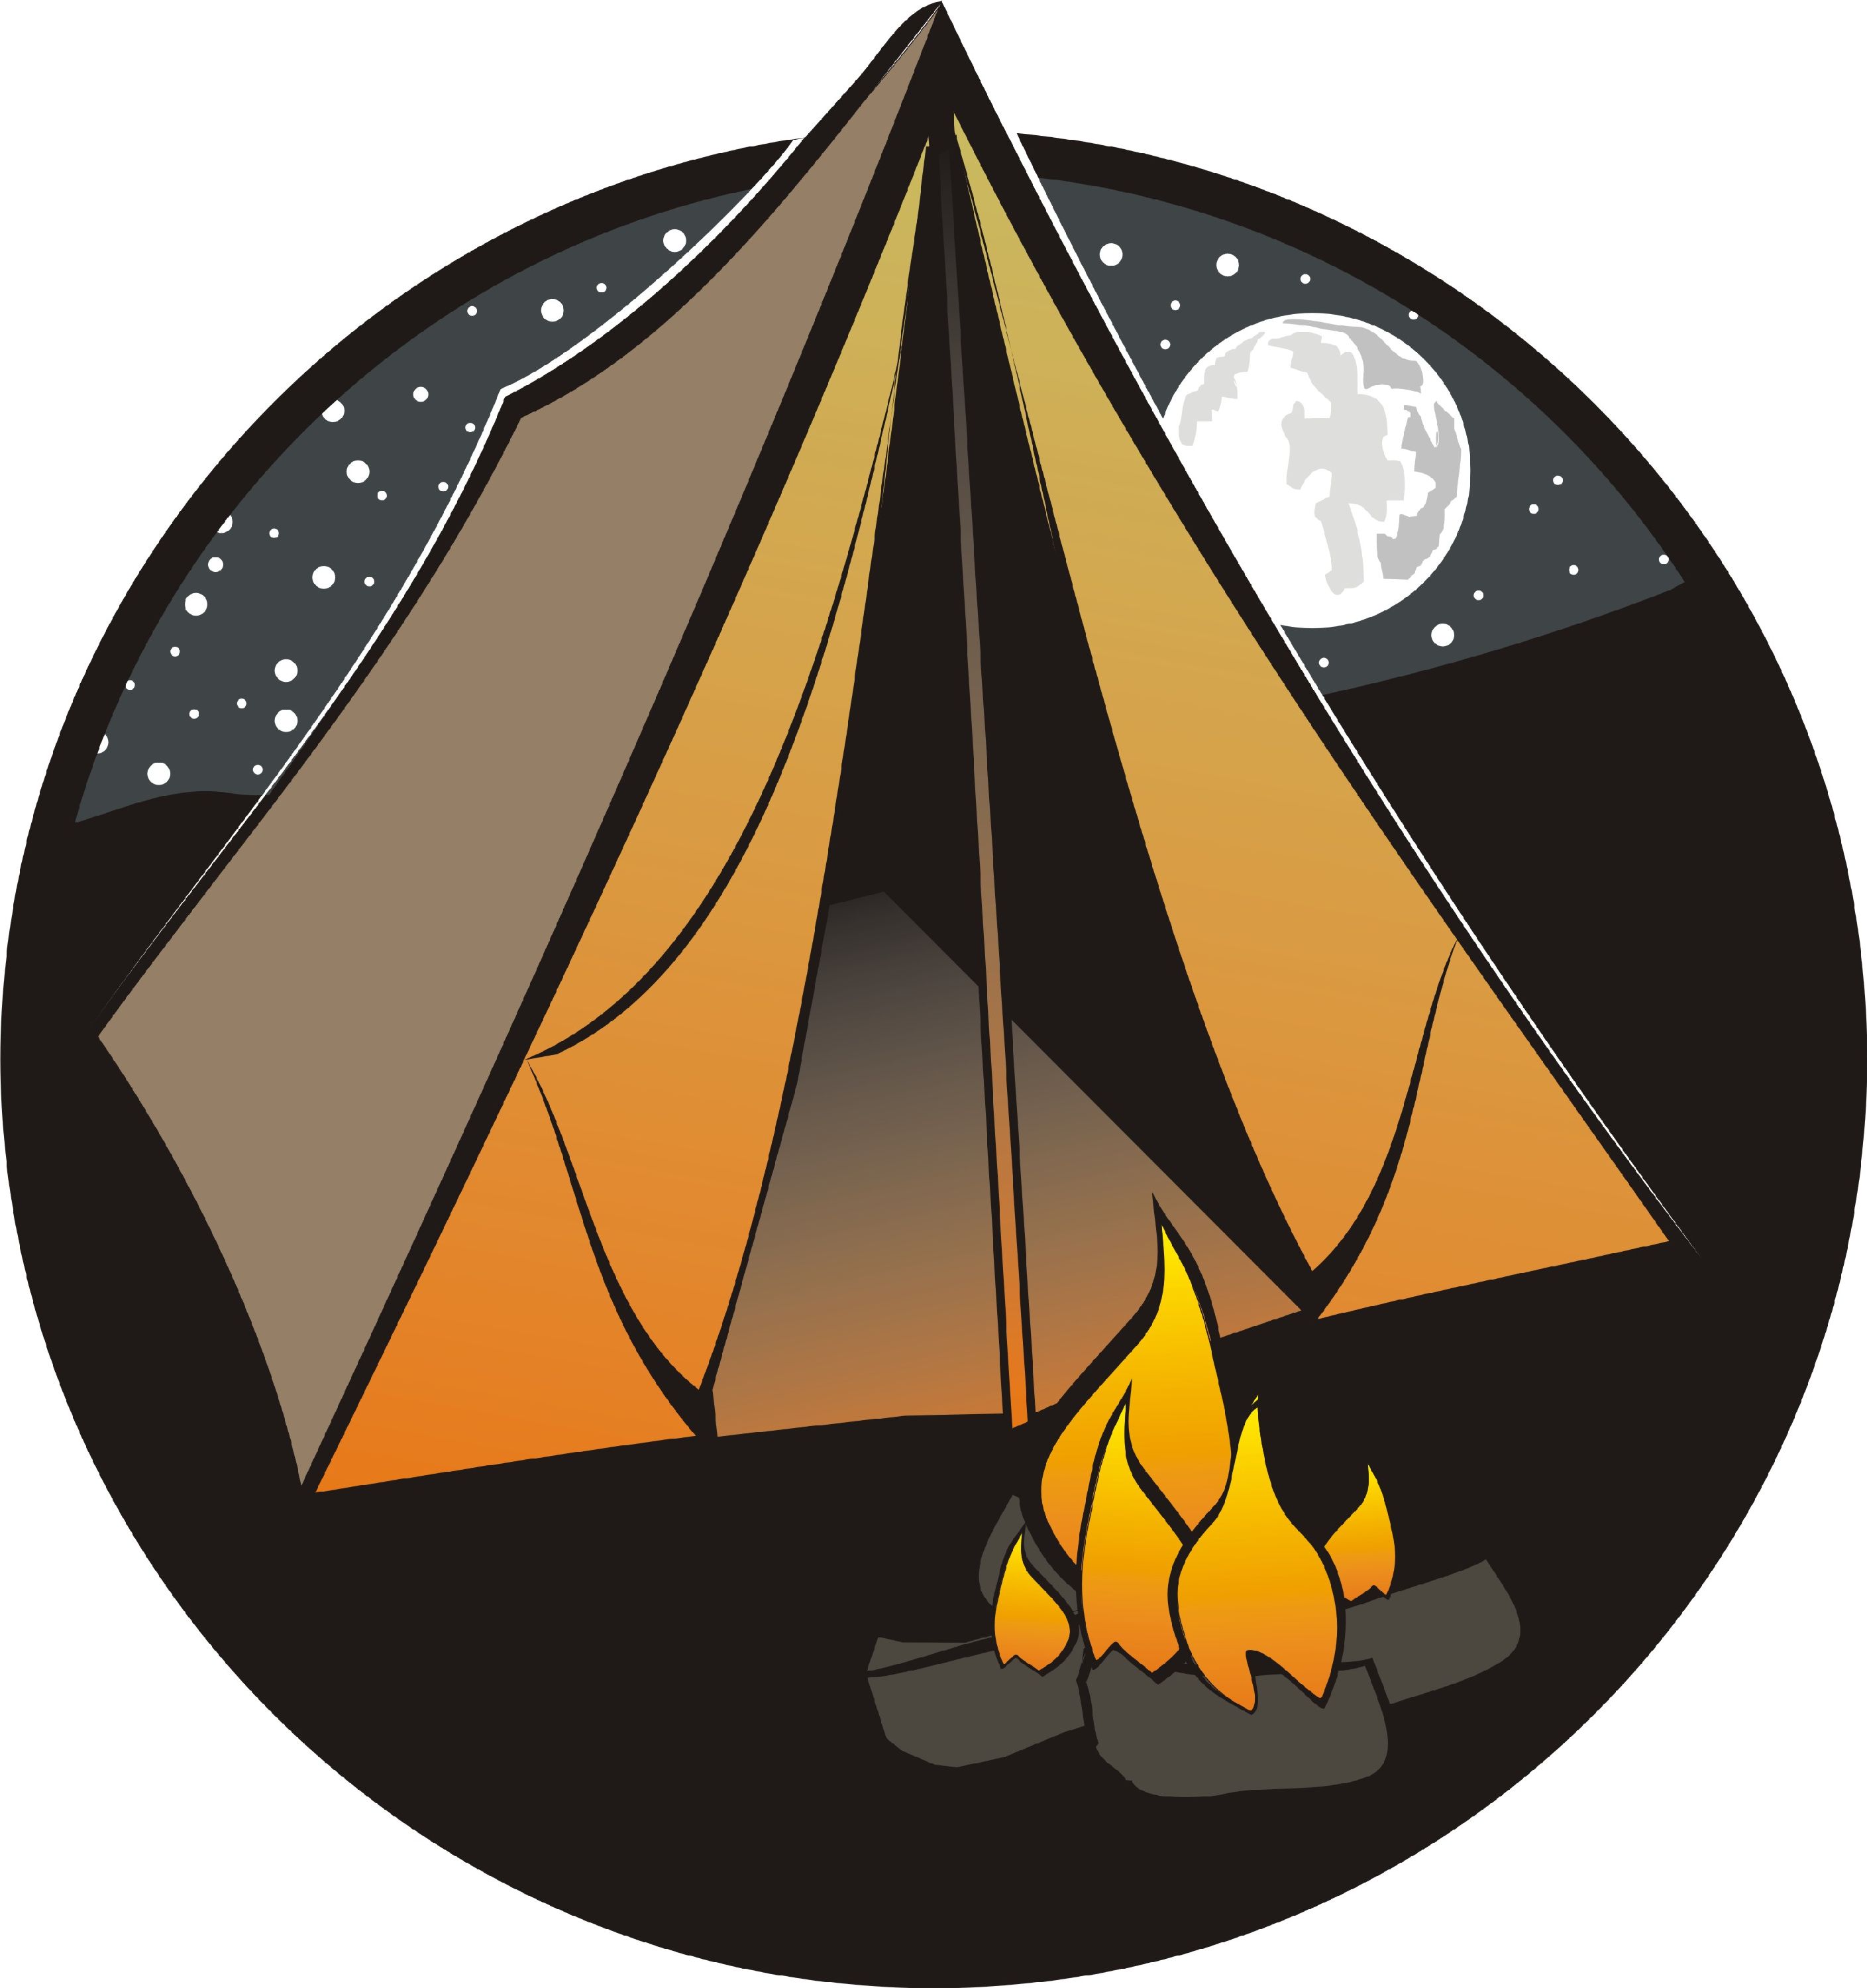 Camping tent clip art free dromfgc top